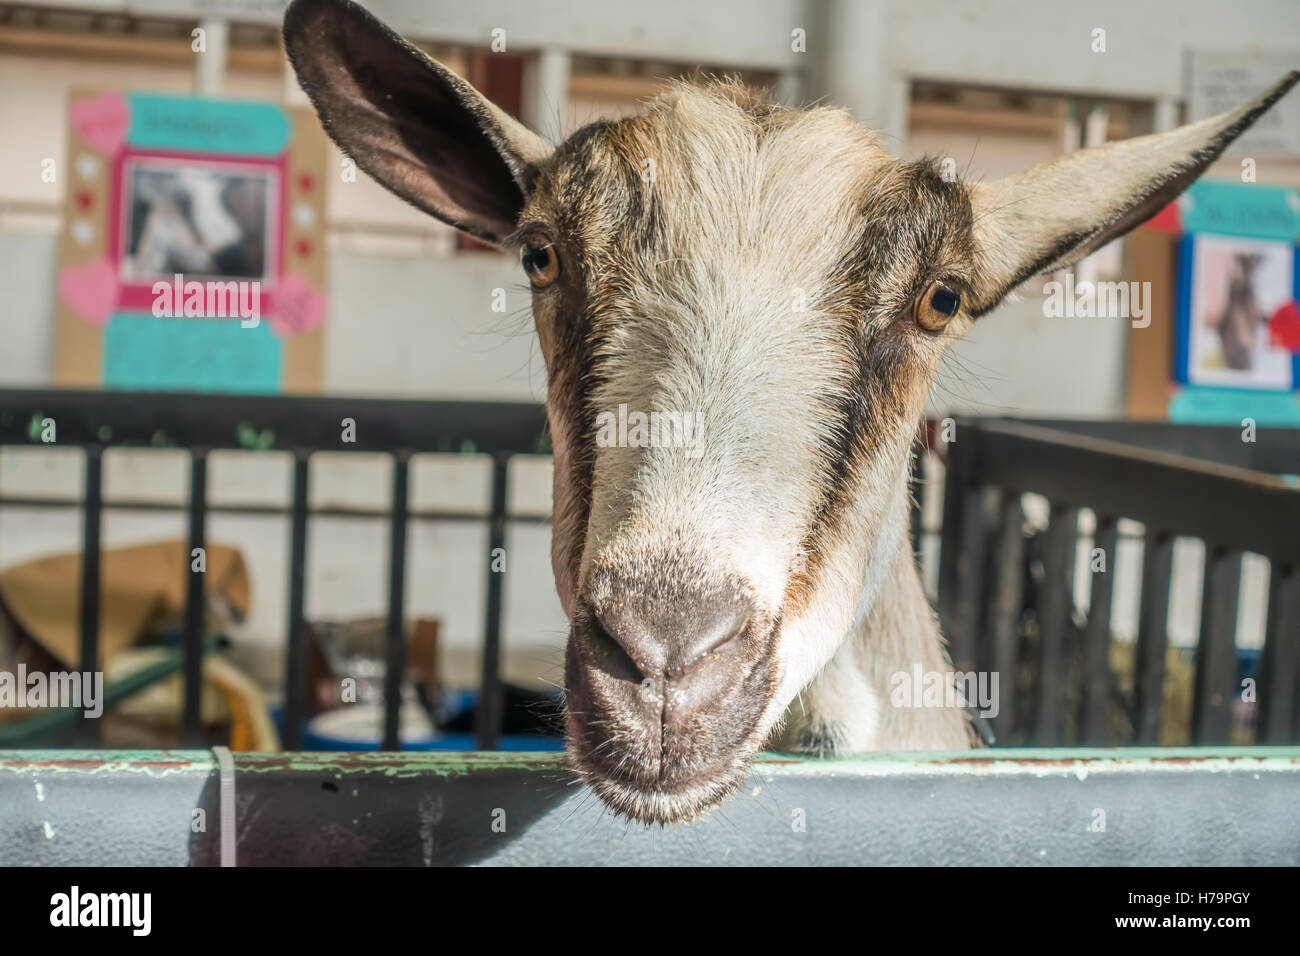 Retrato de un marrón y blanco de cabra con ojos marrones. Foto de stock